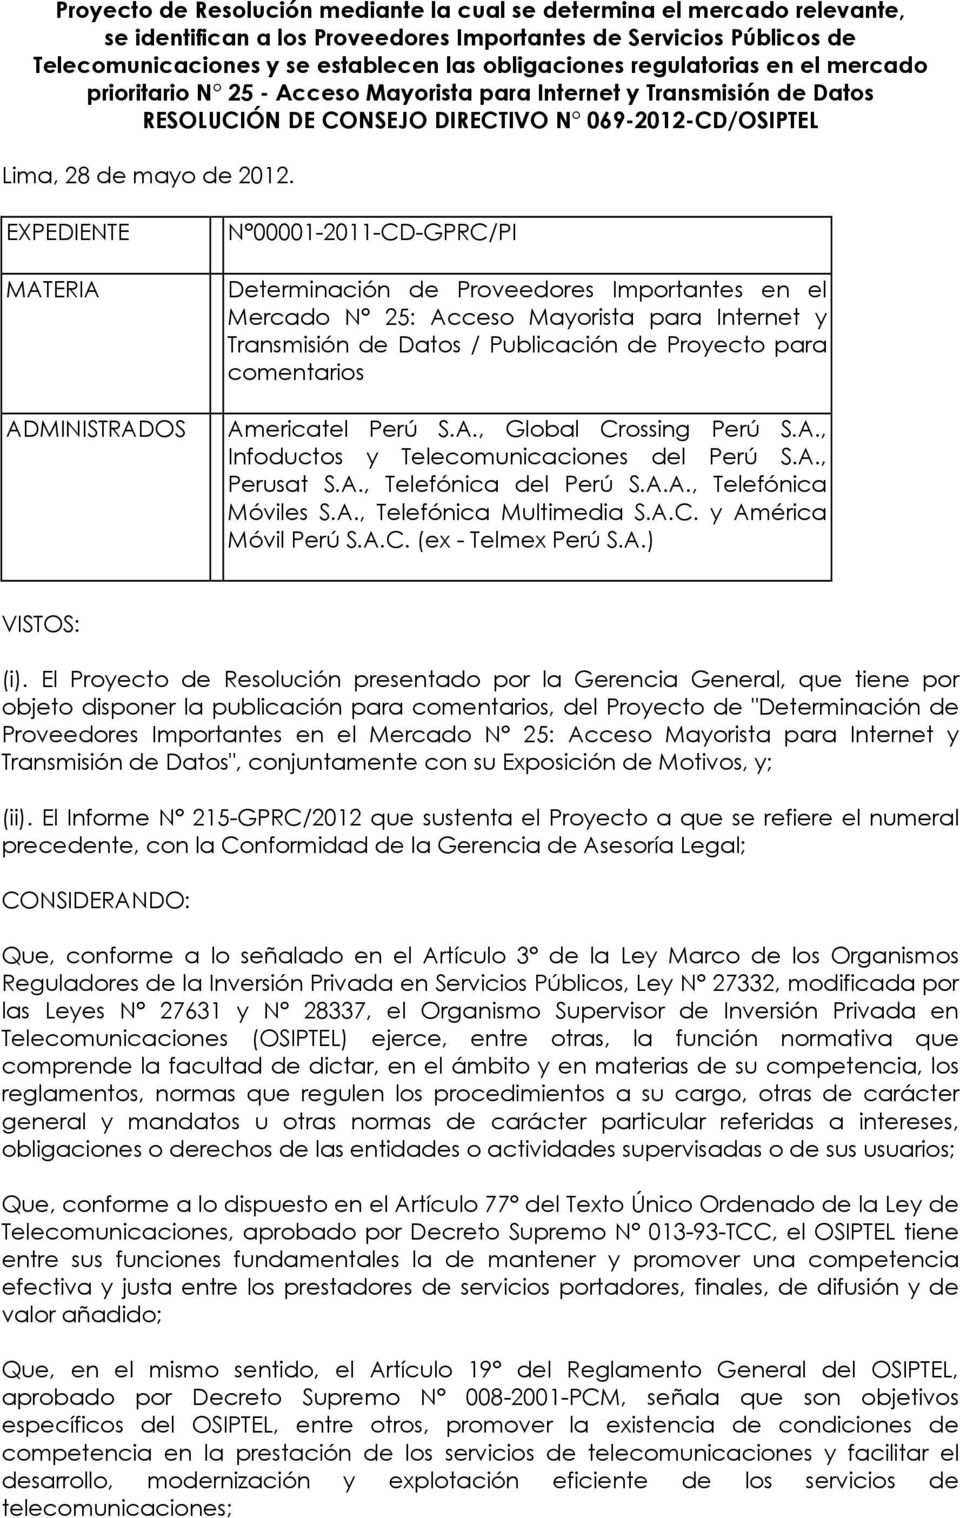 EXPEDIENTE MATERIA ADMINISTRADOS N 00001-2011-CD-GPRC/PI Determinación de Proveedores Importantes en el Mercado N 25: Acceso Mayorista para Internet y Transmisión de Datos / Publicación de Proyecto